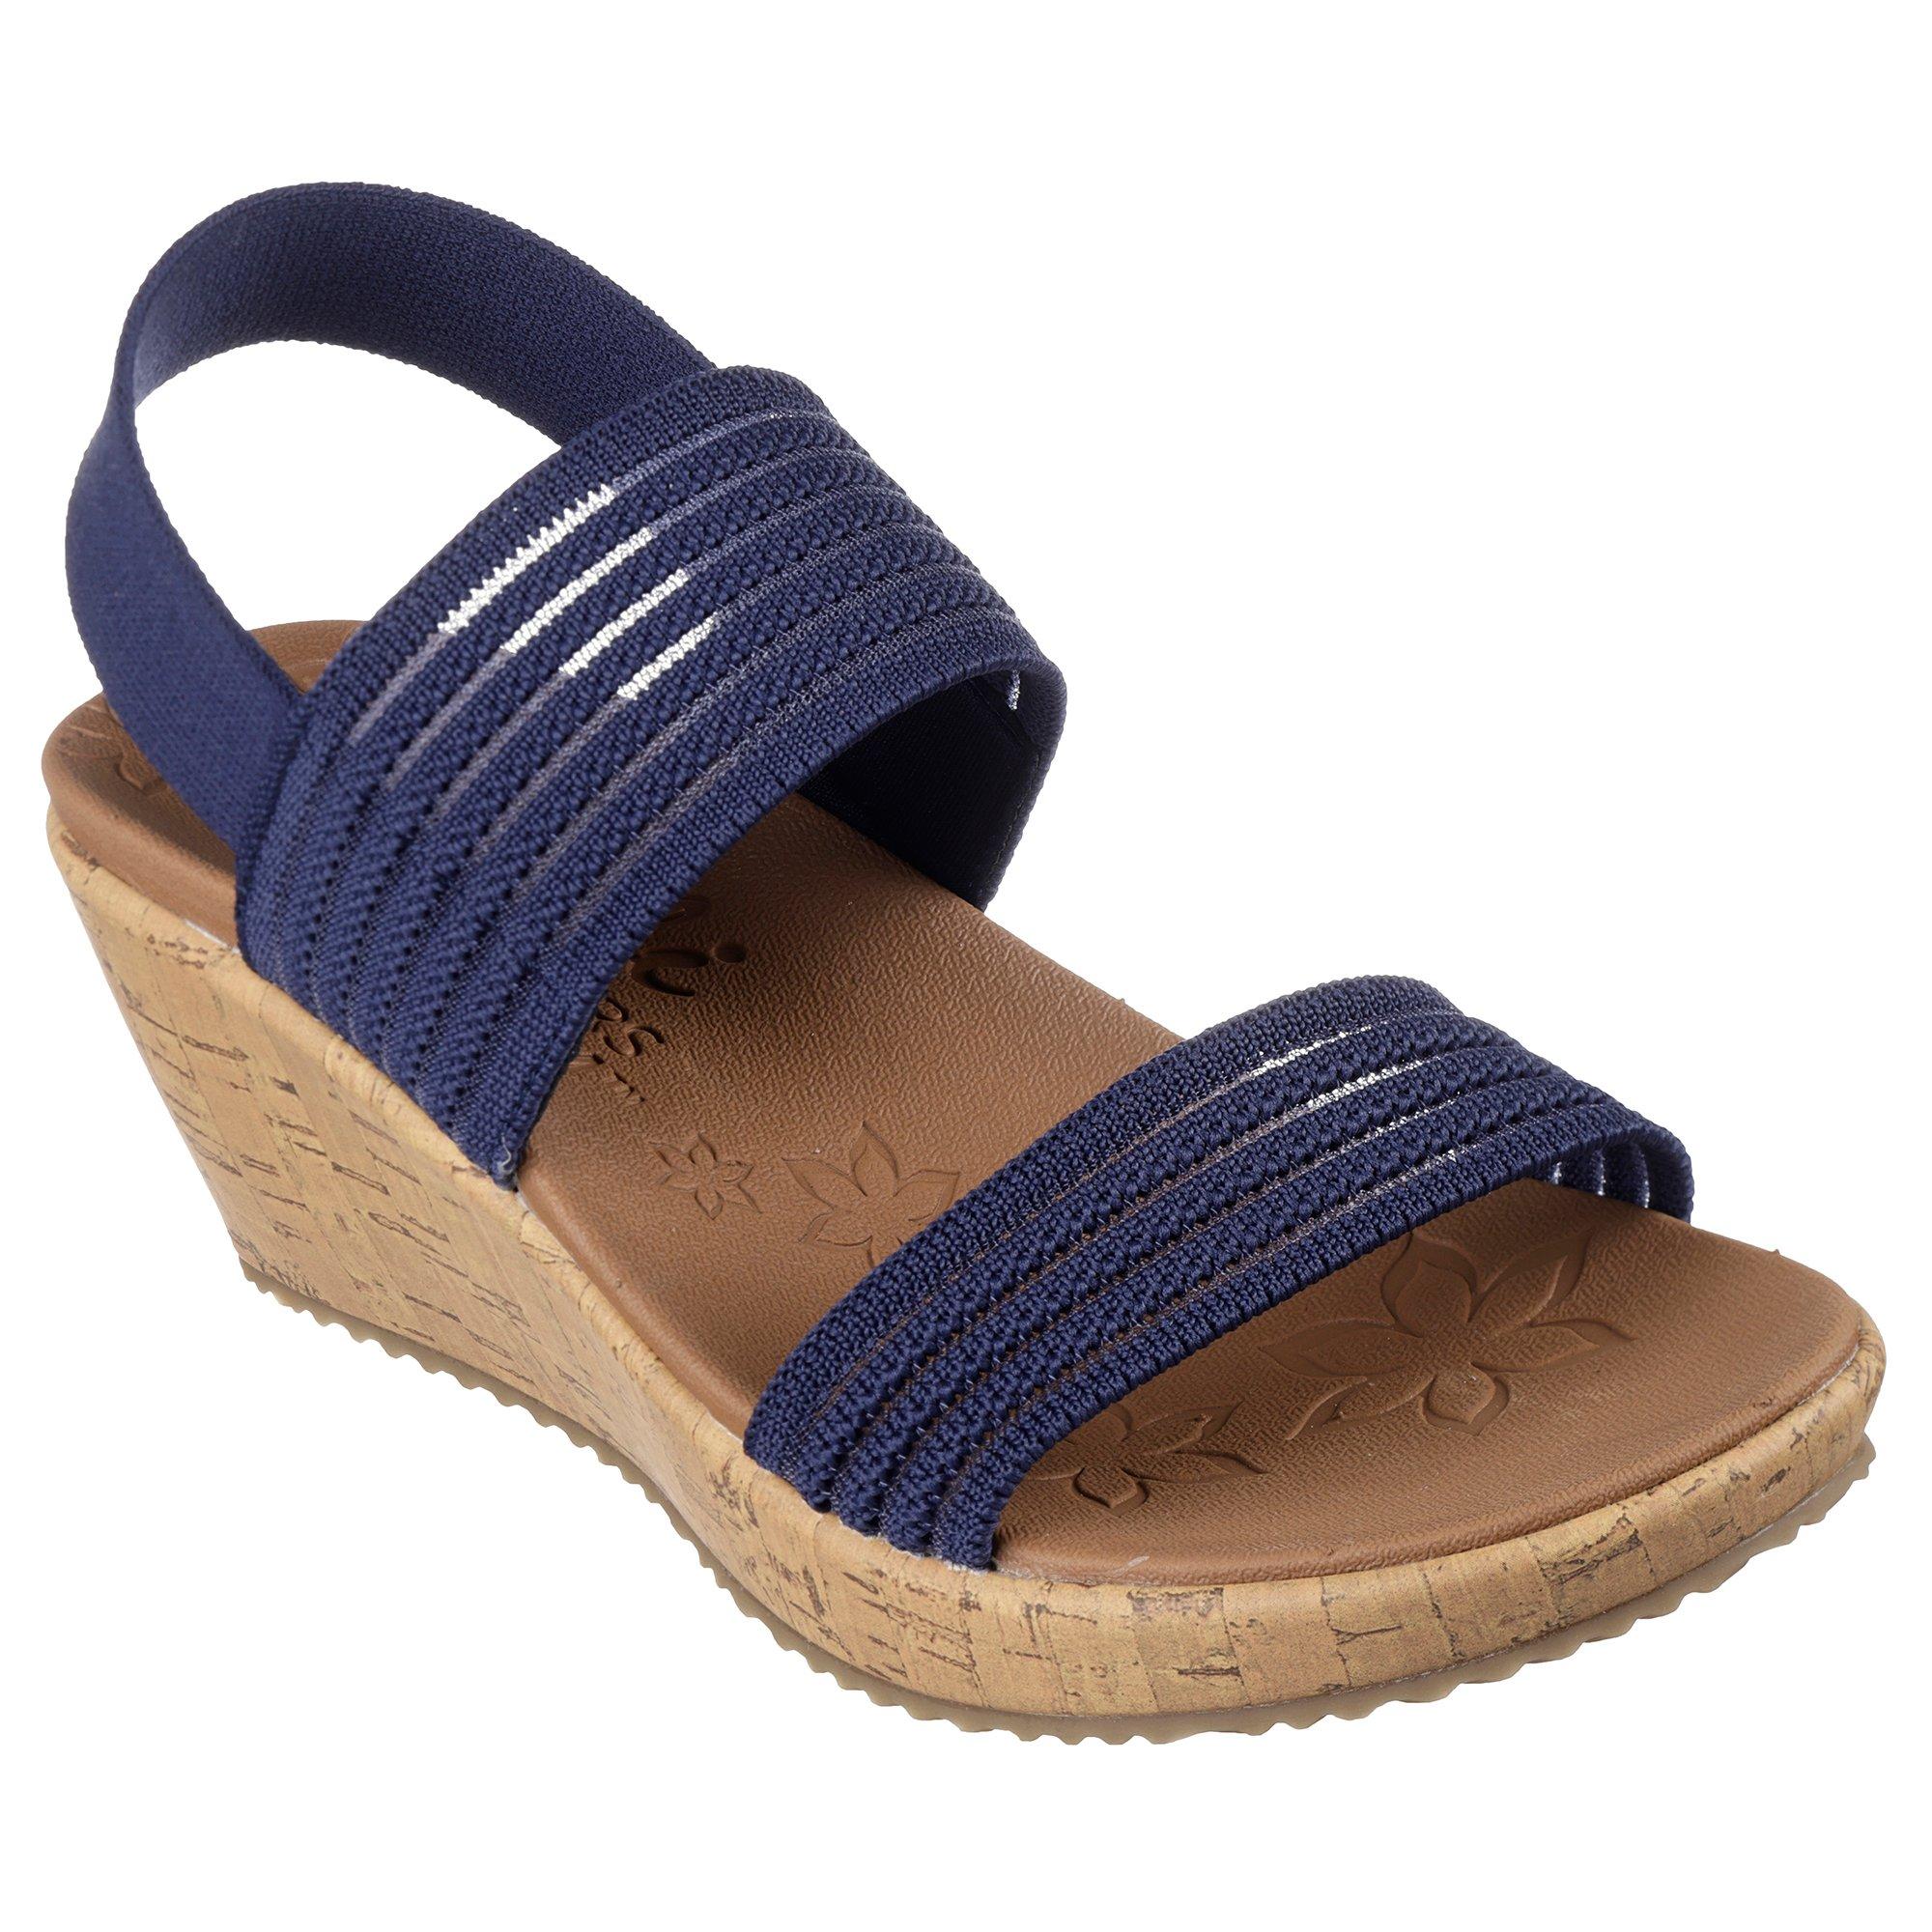 Reel Legends Sandals for Women - Poshmark